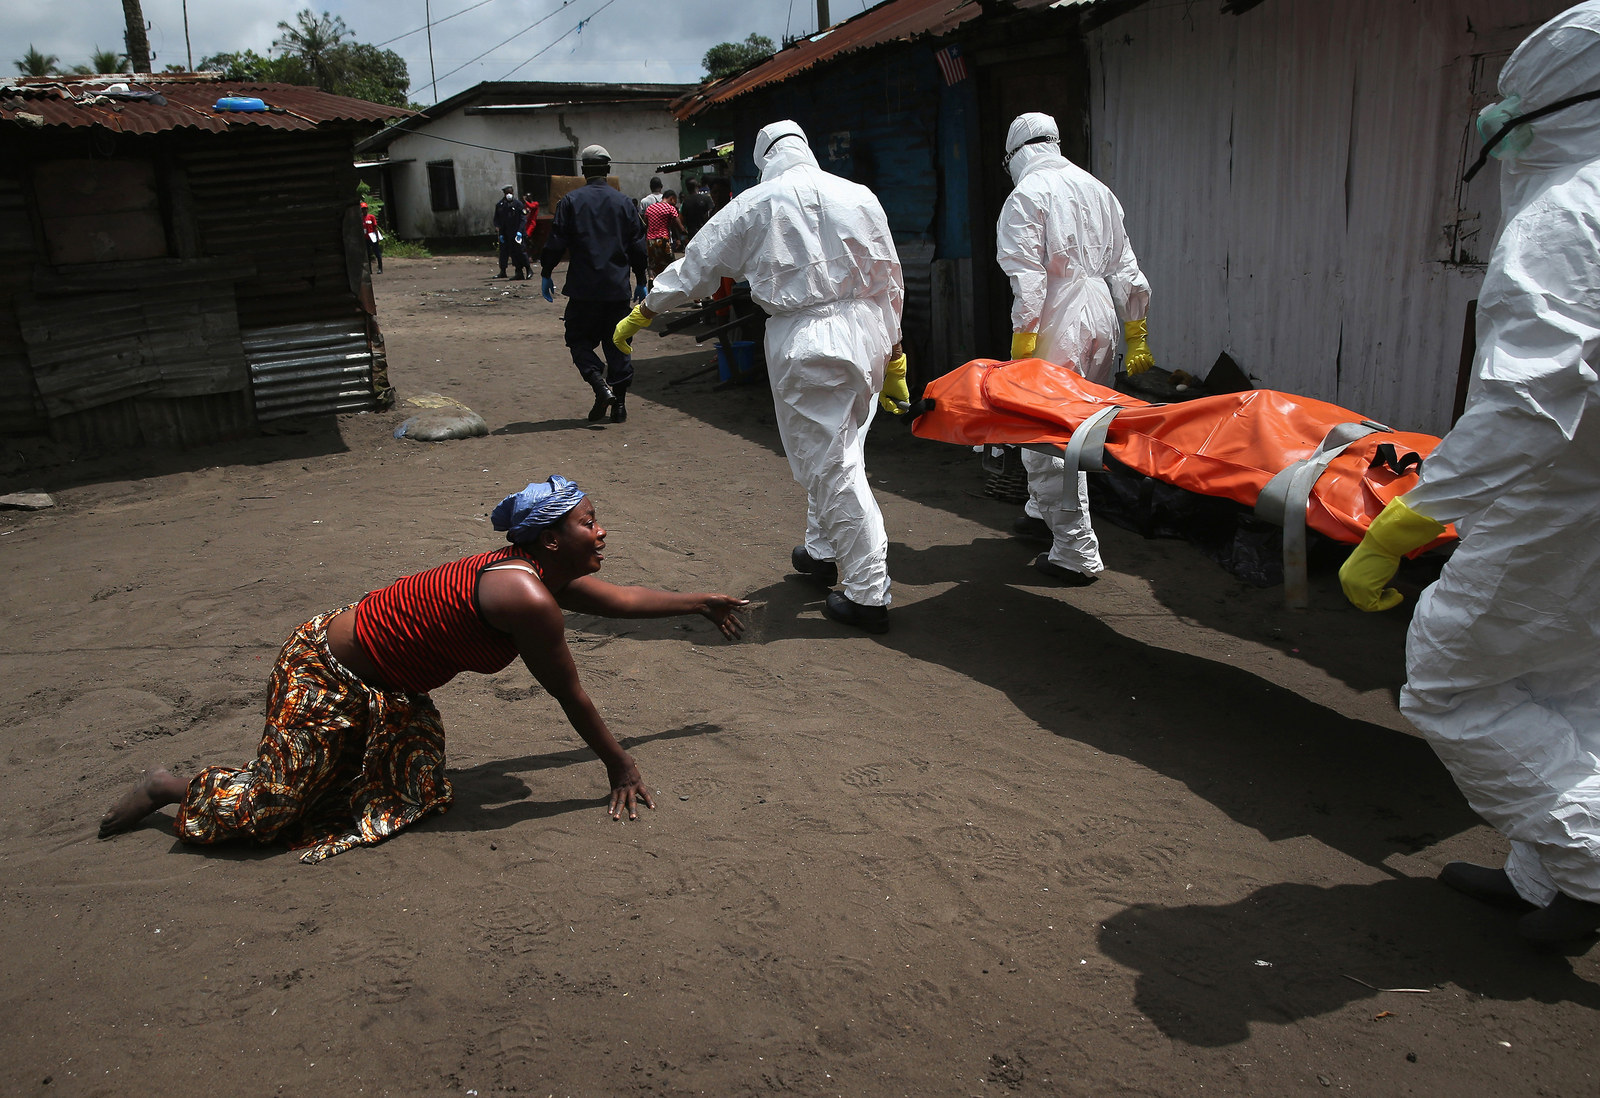 伊波拉病毒图片介绍图片